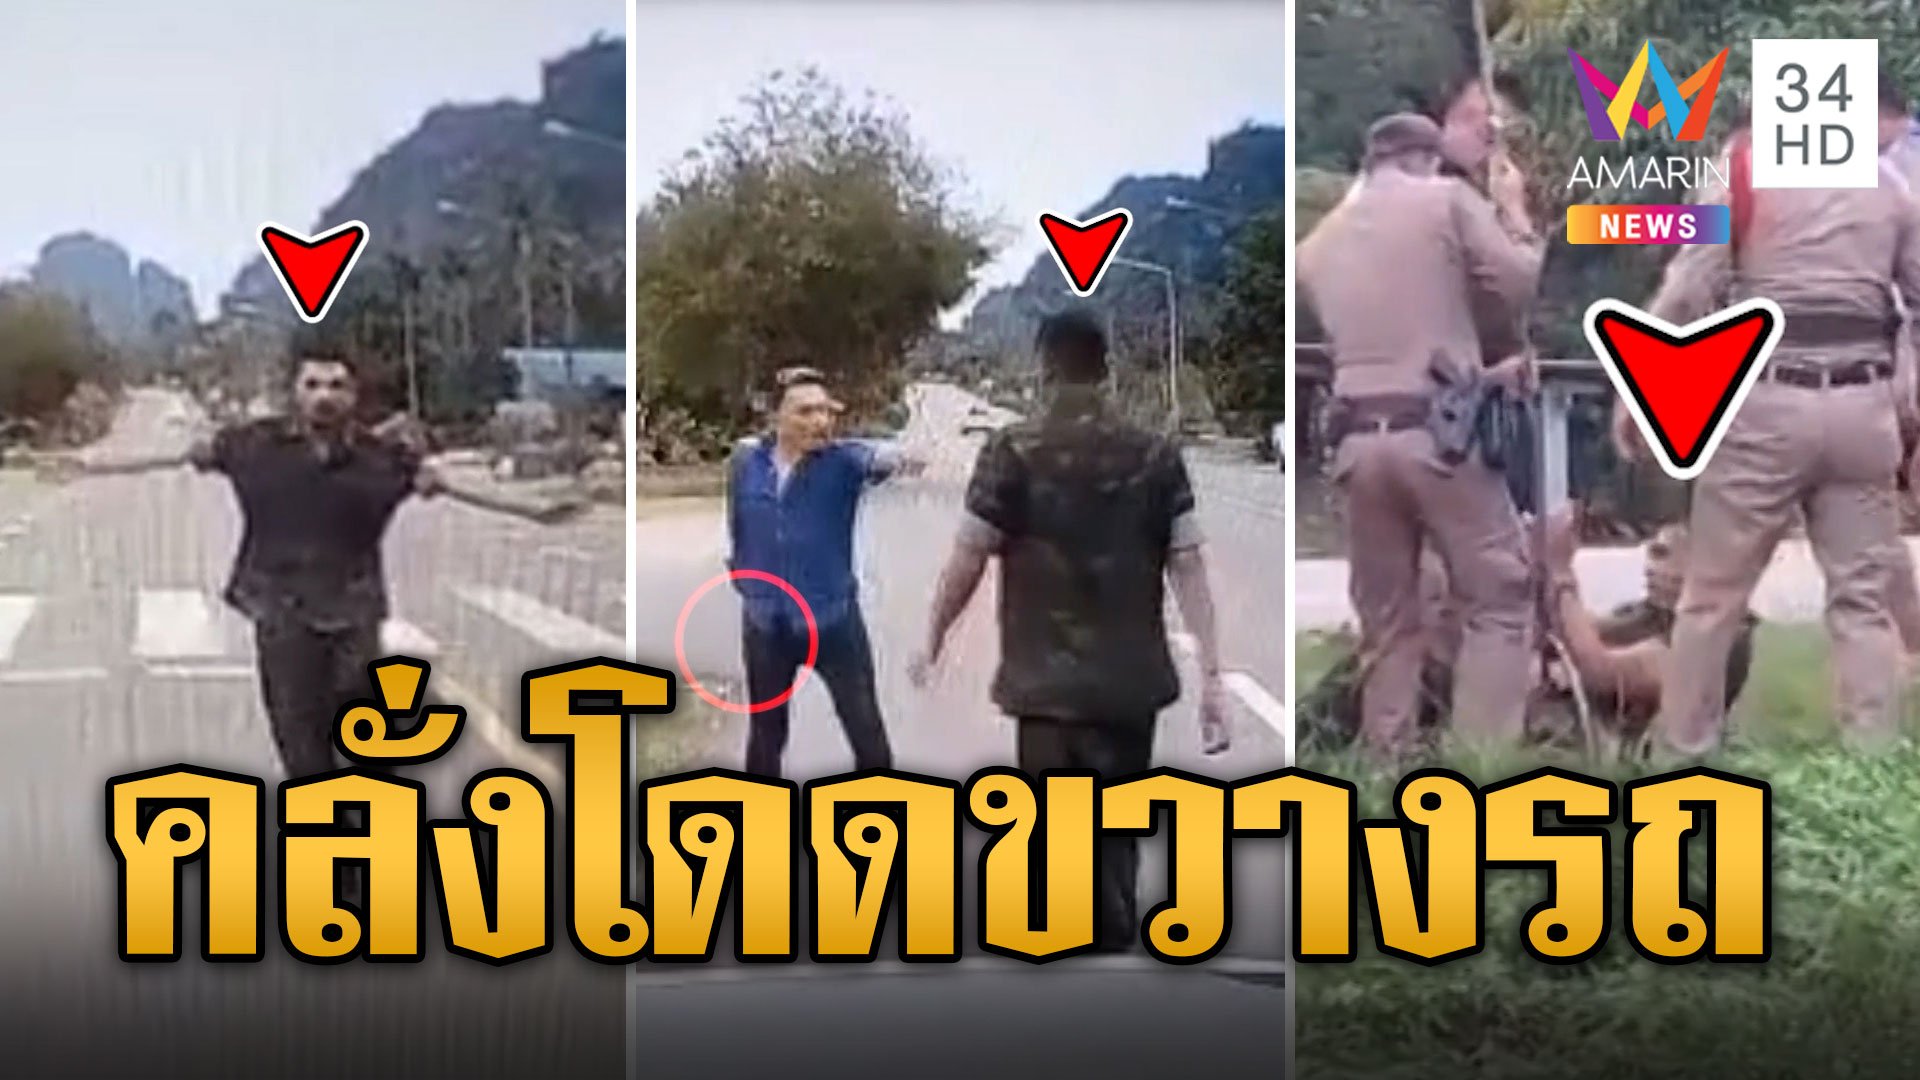 ทหารคลั่ง! วิ่งขวาง-พังรถกลางถนน แม่ยกมือท่วมหัวขอโทษแทนลูก | ข่าวเที่ยงอมรินทร์ | 25 พ.ย. 66 | AMARIN TVHD34